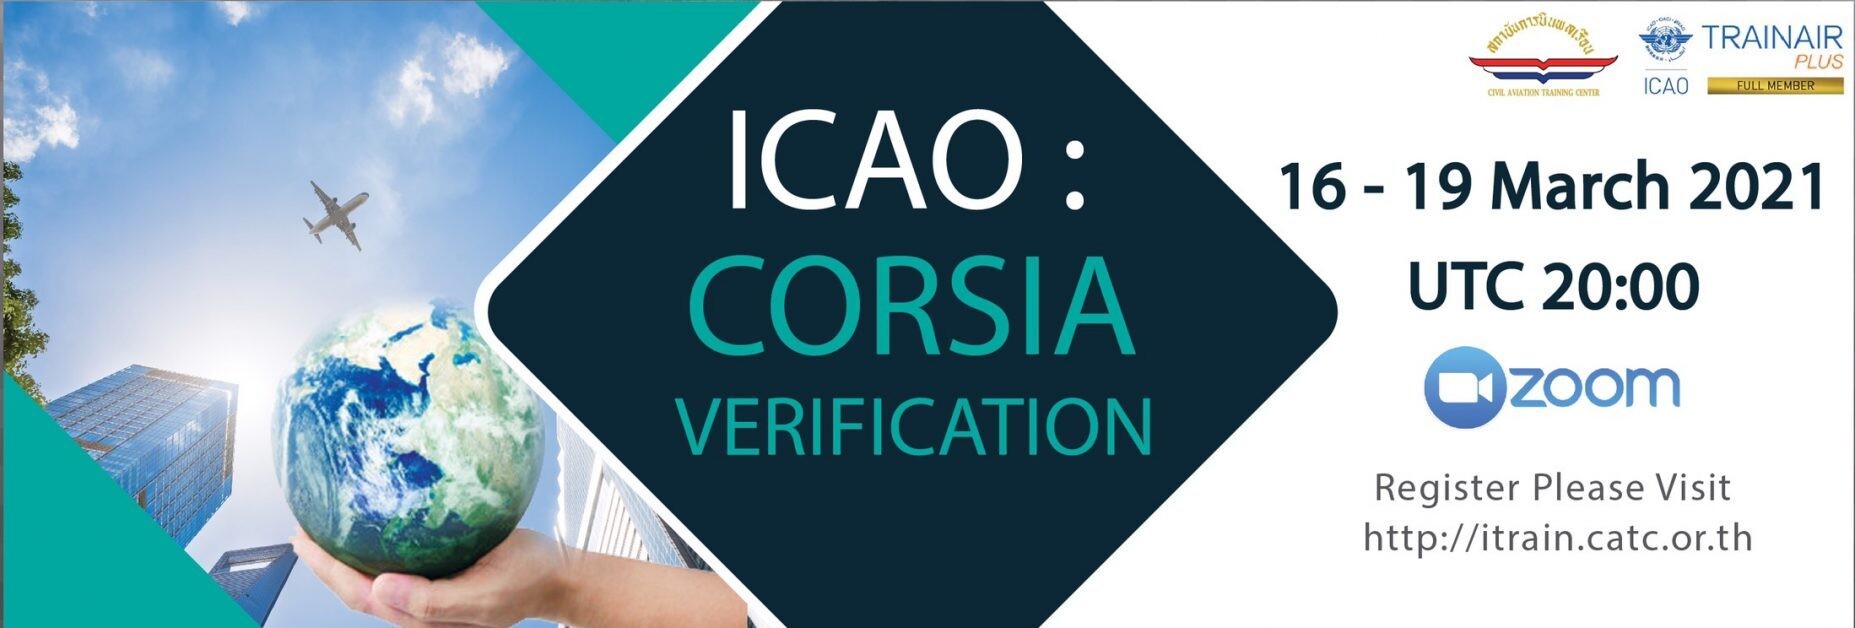 สถาบันการบินพลเรือน เปิดการฝึกอบรมหลักสูตร ICAO : CORSIA VERIFICATION ในรูปแบบ Virtual Classroom